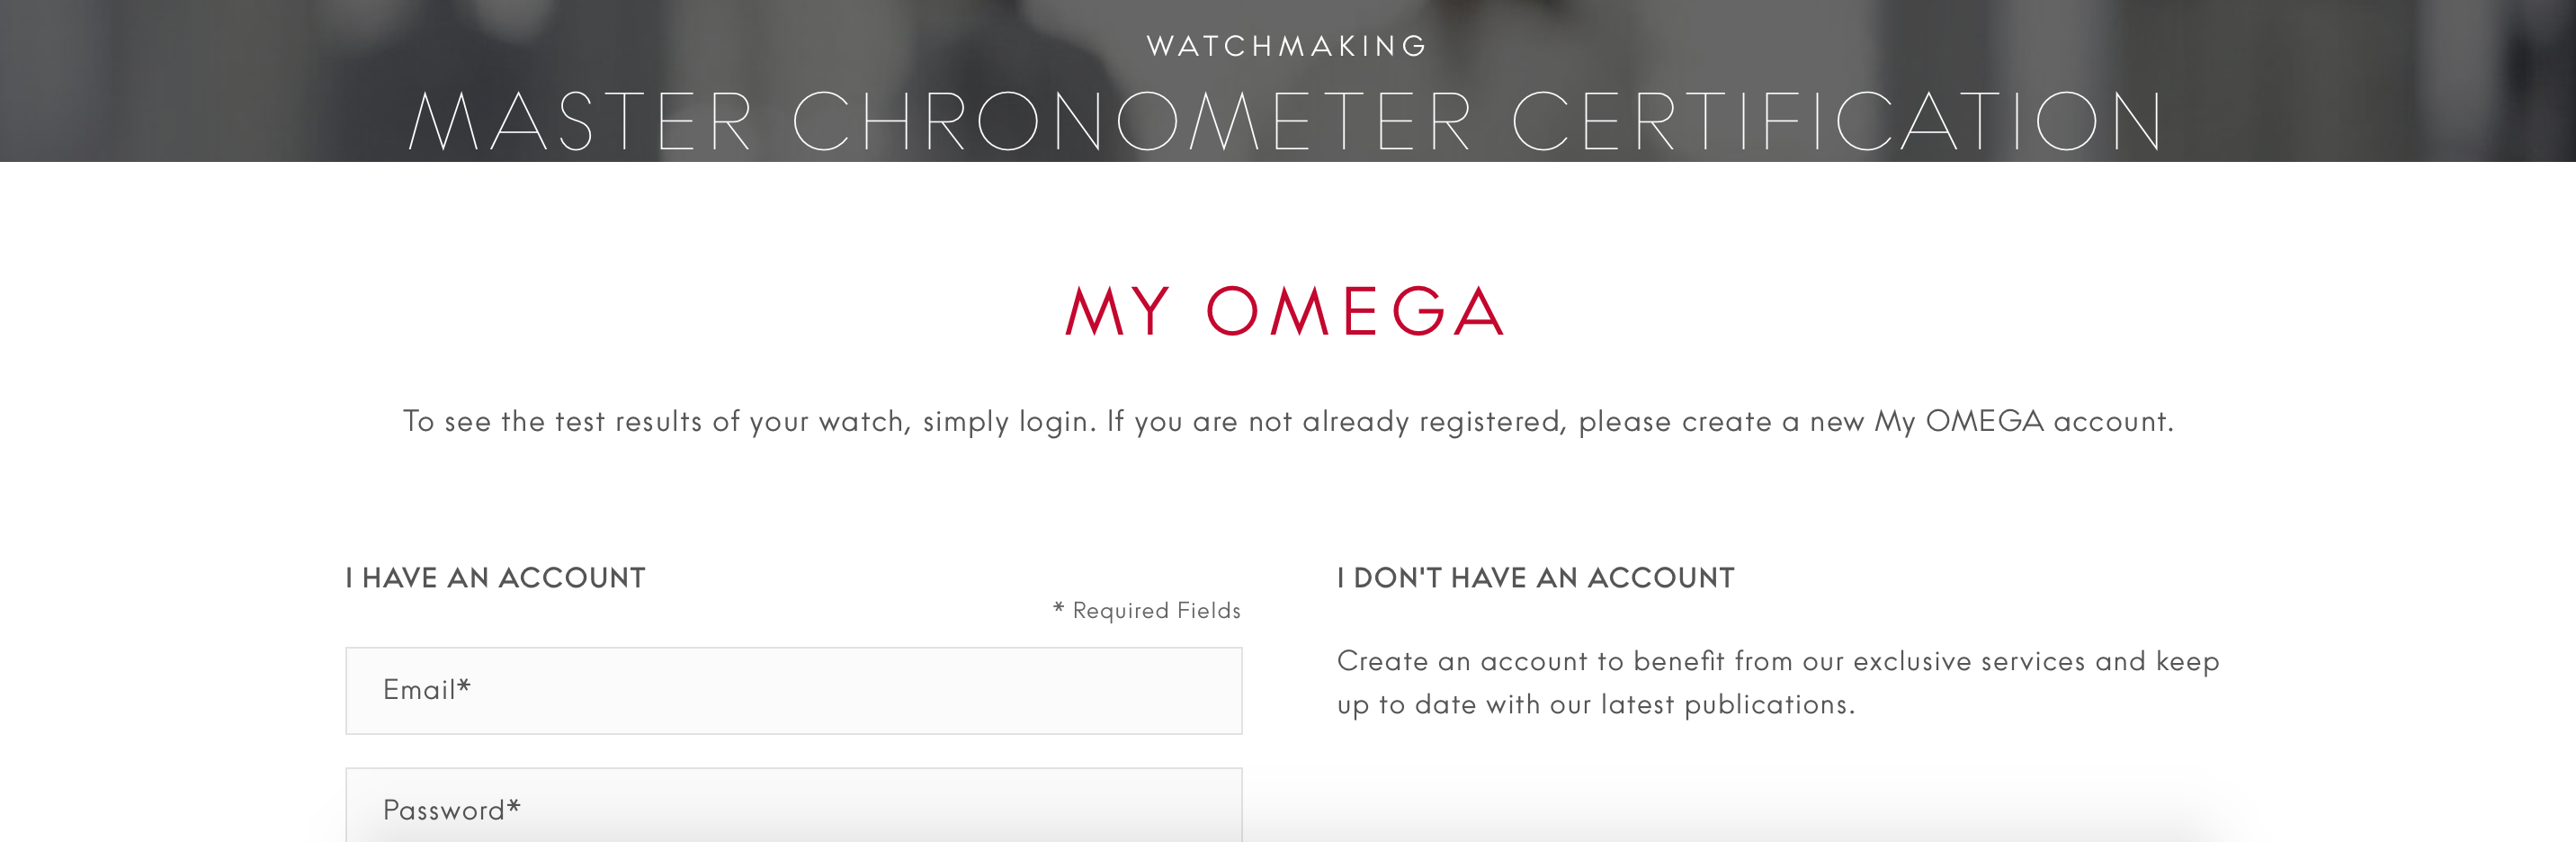 Omega Master Chronometer certified 